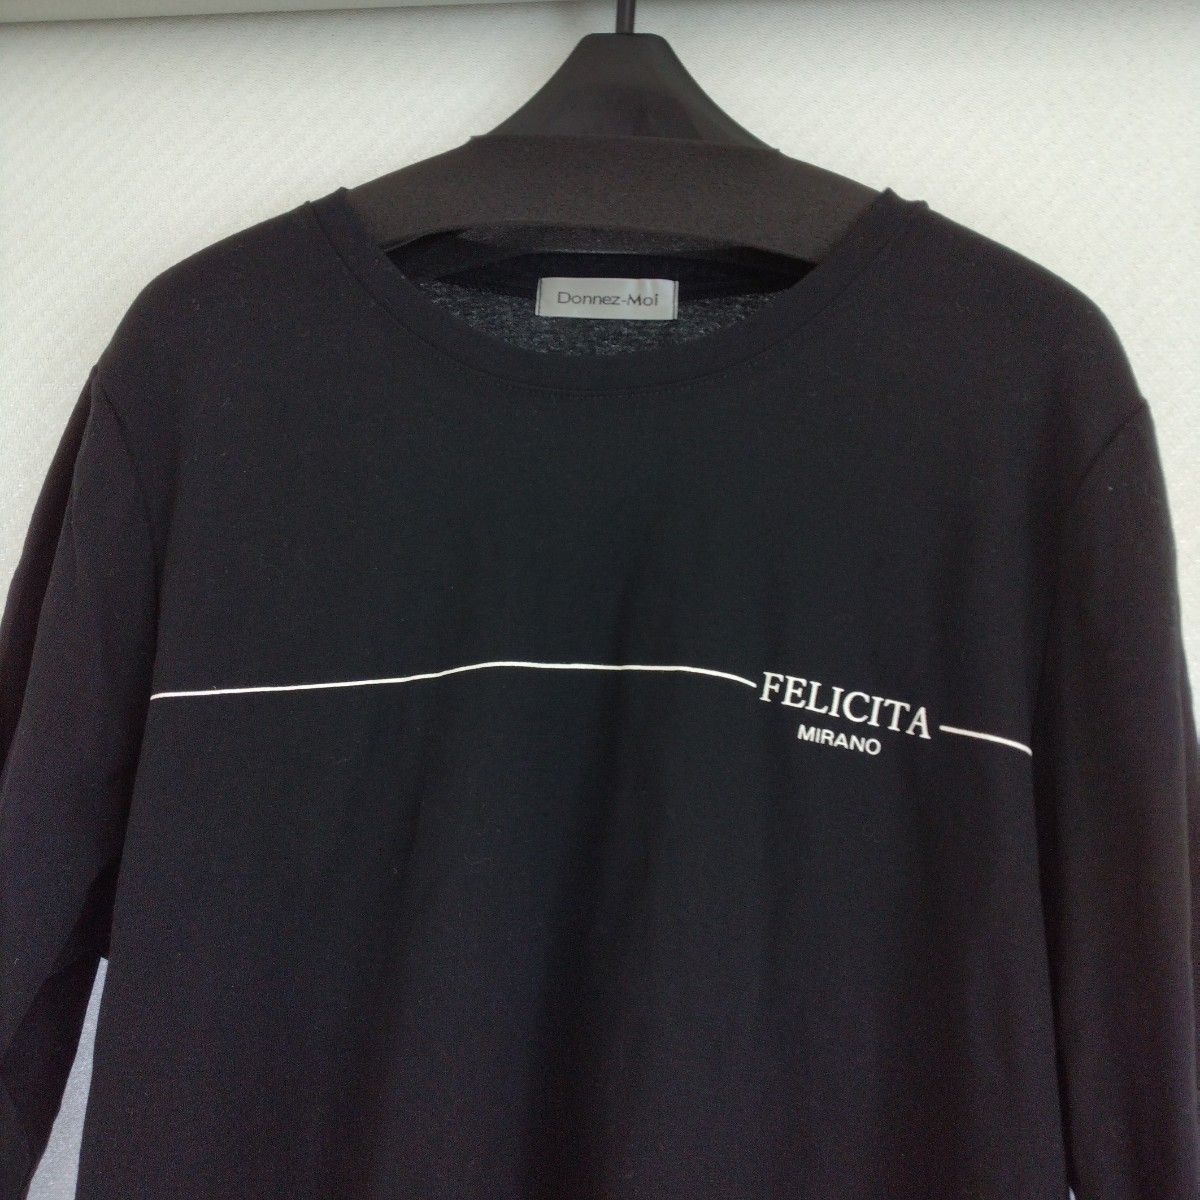 タグ付き　日本製　アンフレール　DONNEZ-MOI ブラックカットソー Tシャツ 黒 ロゴ